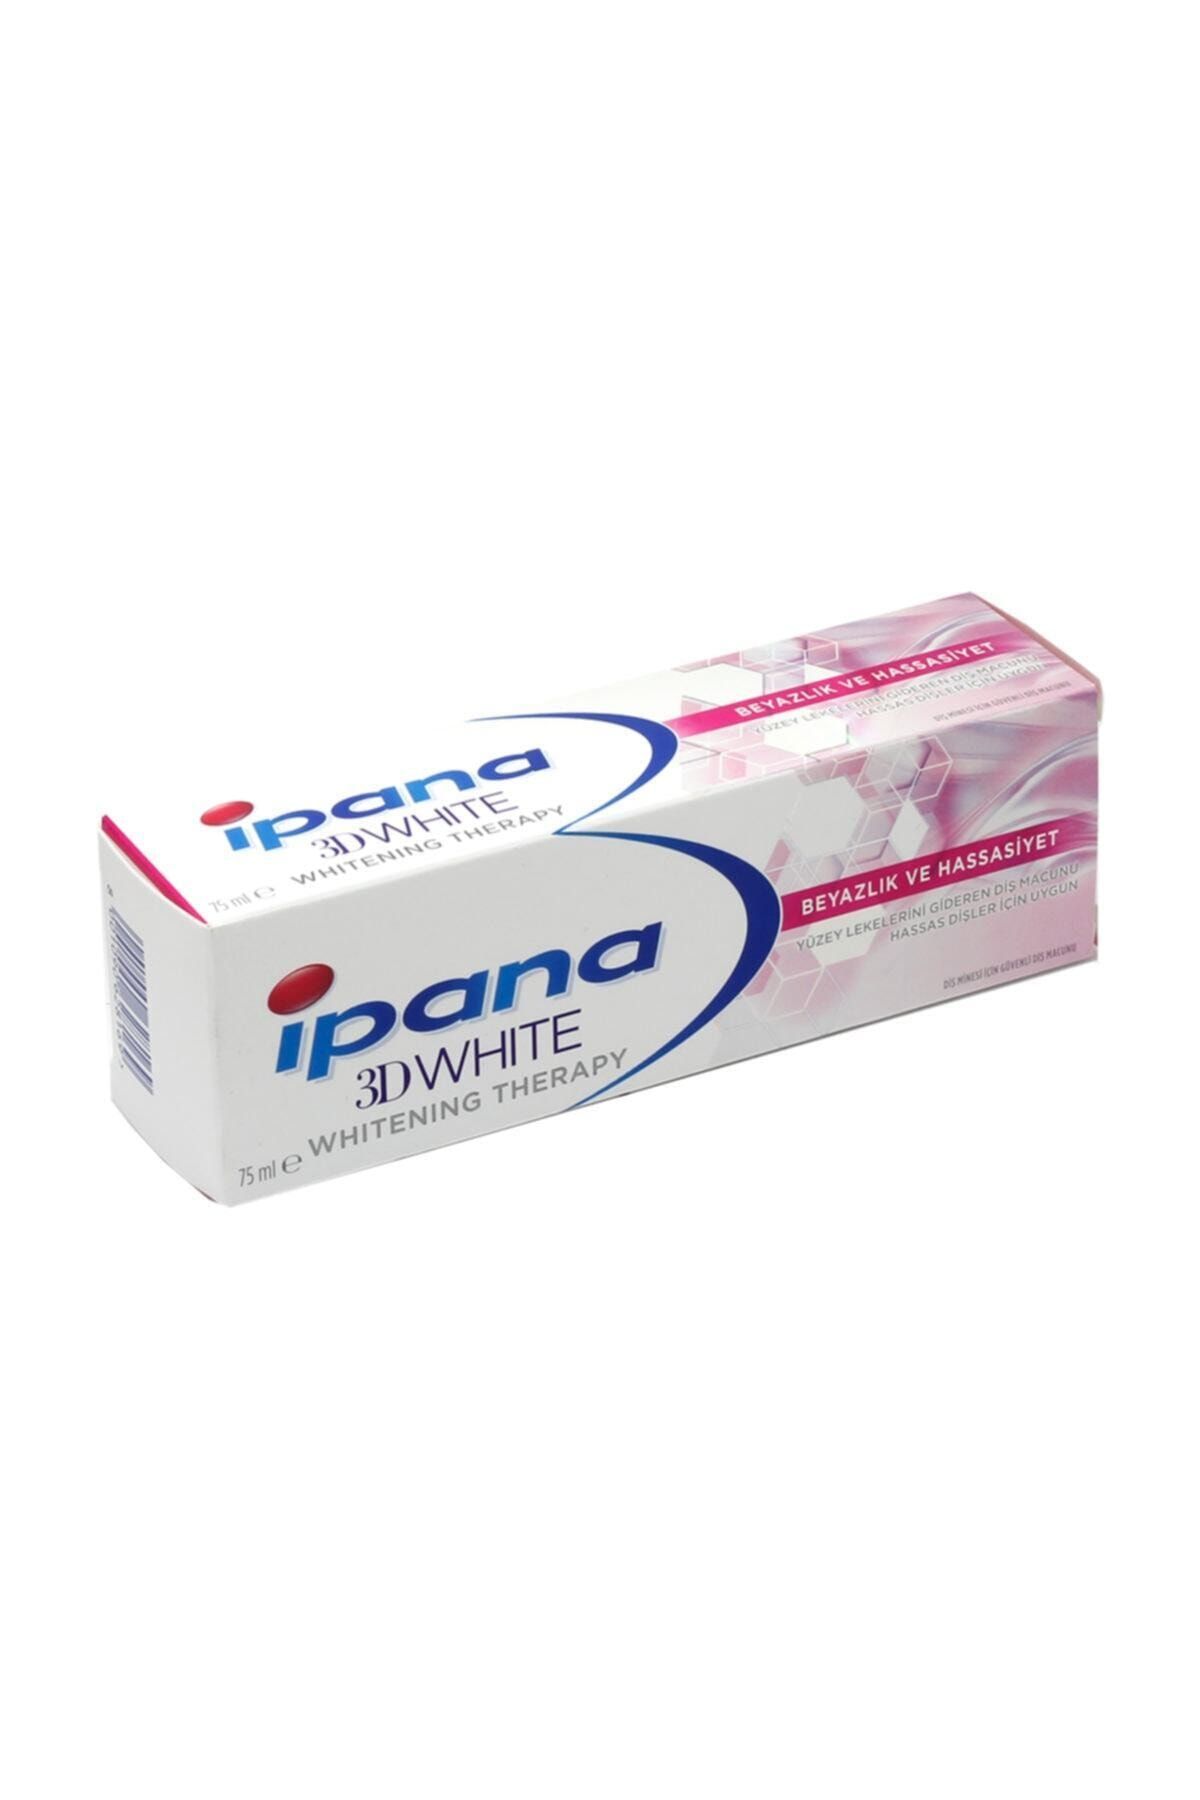 İpana Ipana 3 Boyutlu Beyazlık Therapy Diş Macunu Hassas Beyazlık 75 ml